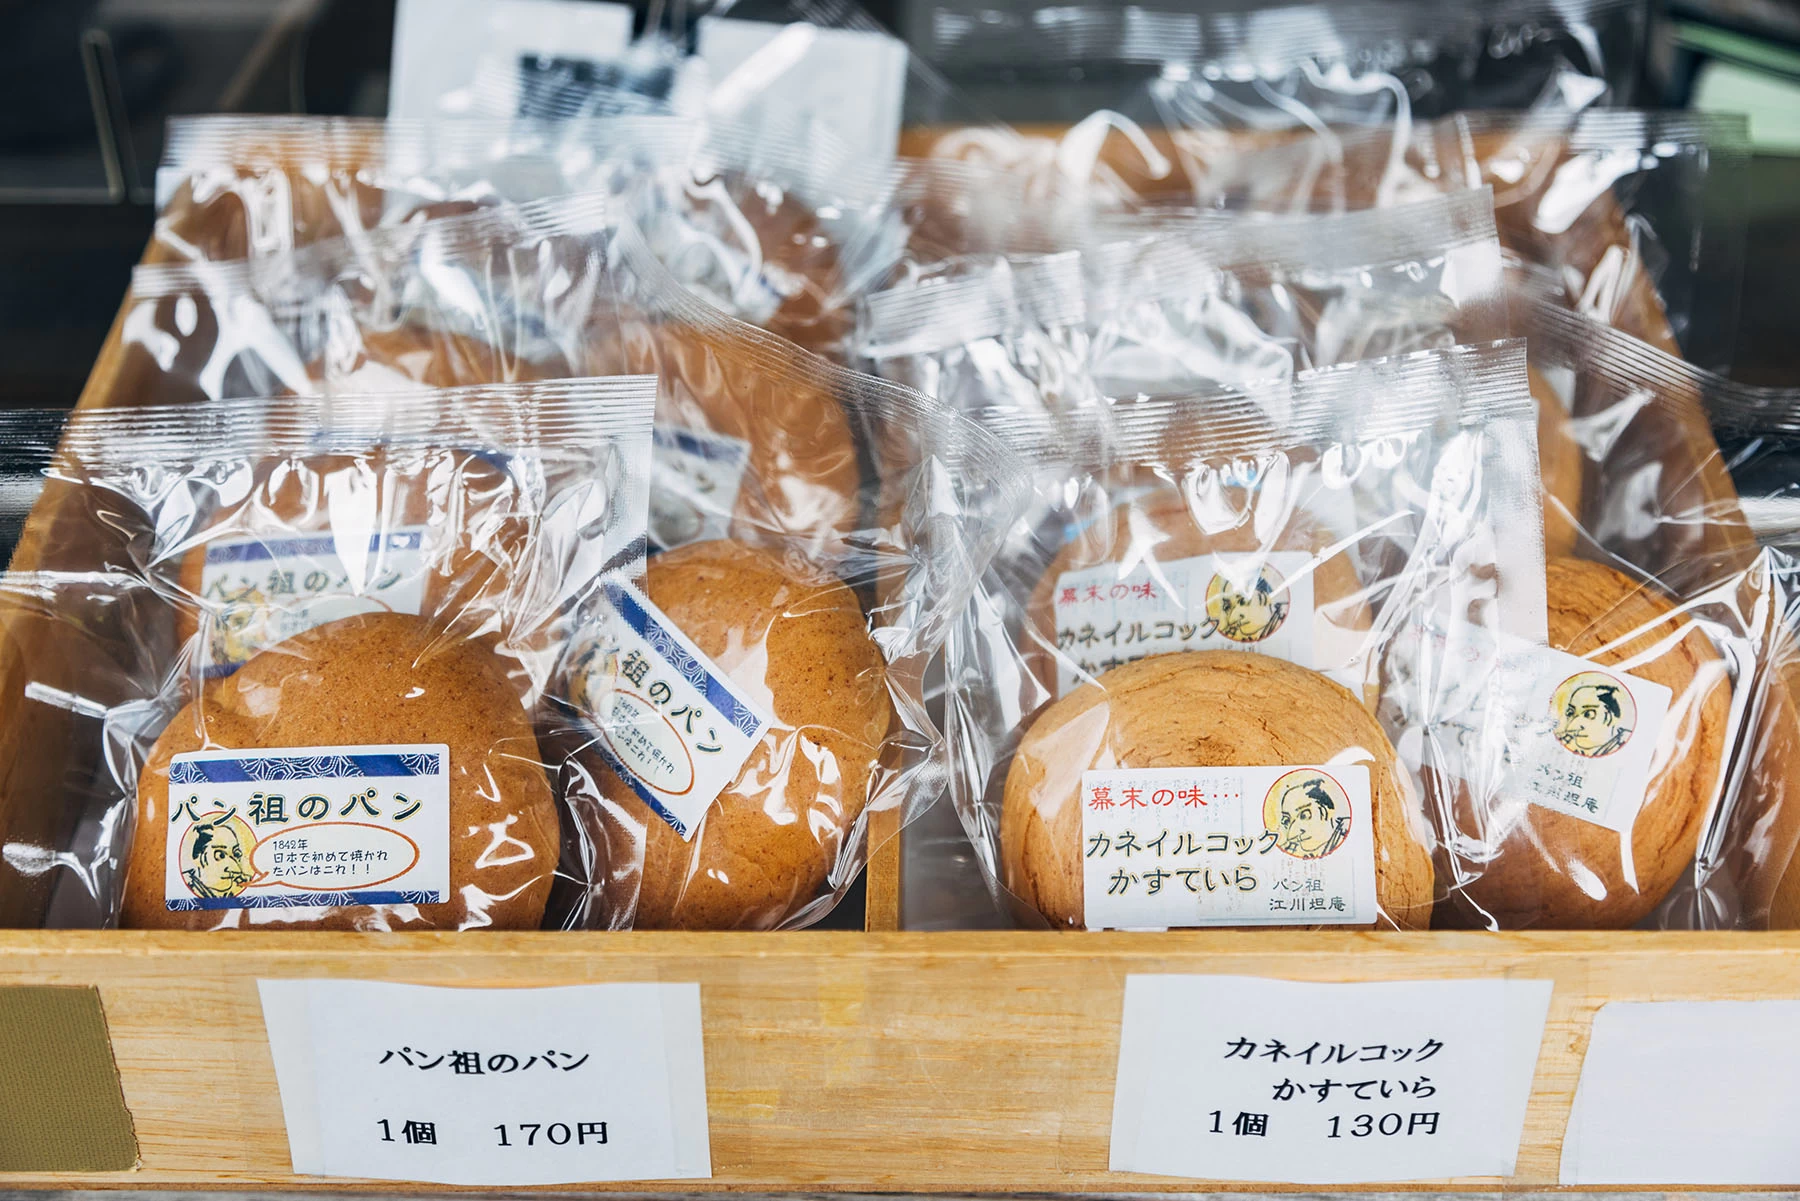 施設内で購入できる「パンの祖パン」170円（左）と「カネイルコックかすていら」130円（右）